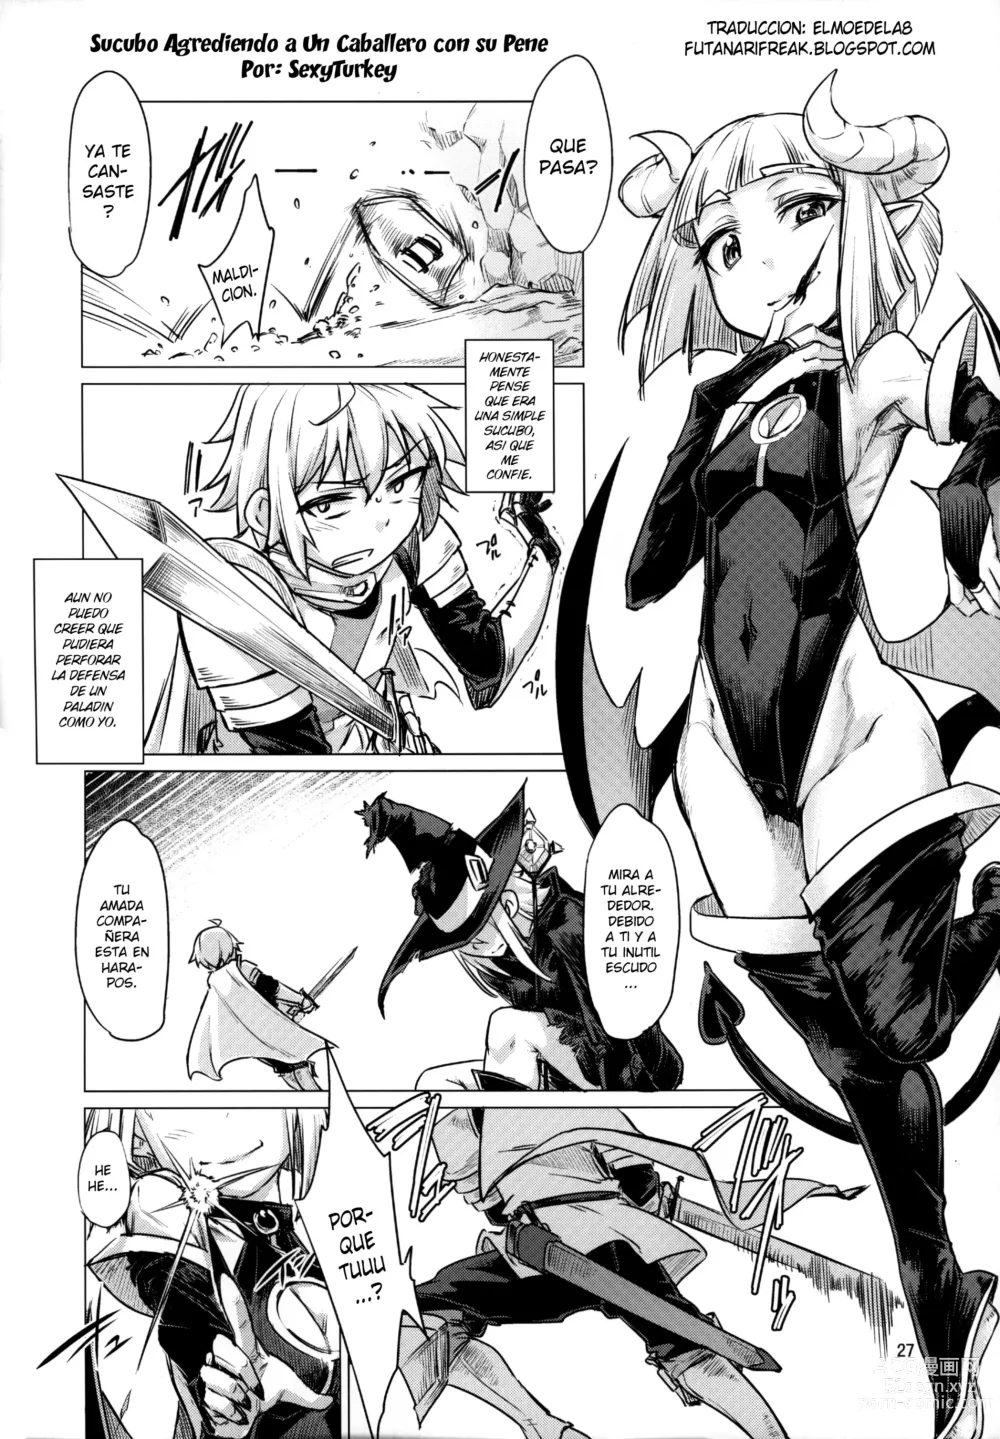 Page 1 of doujinshi Sucubo Agrediendo a Un Caballero con su Pene